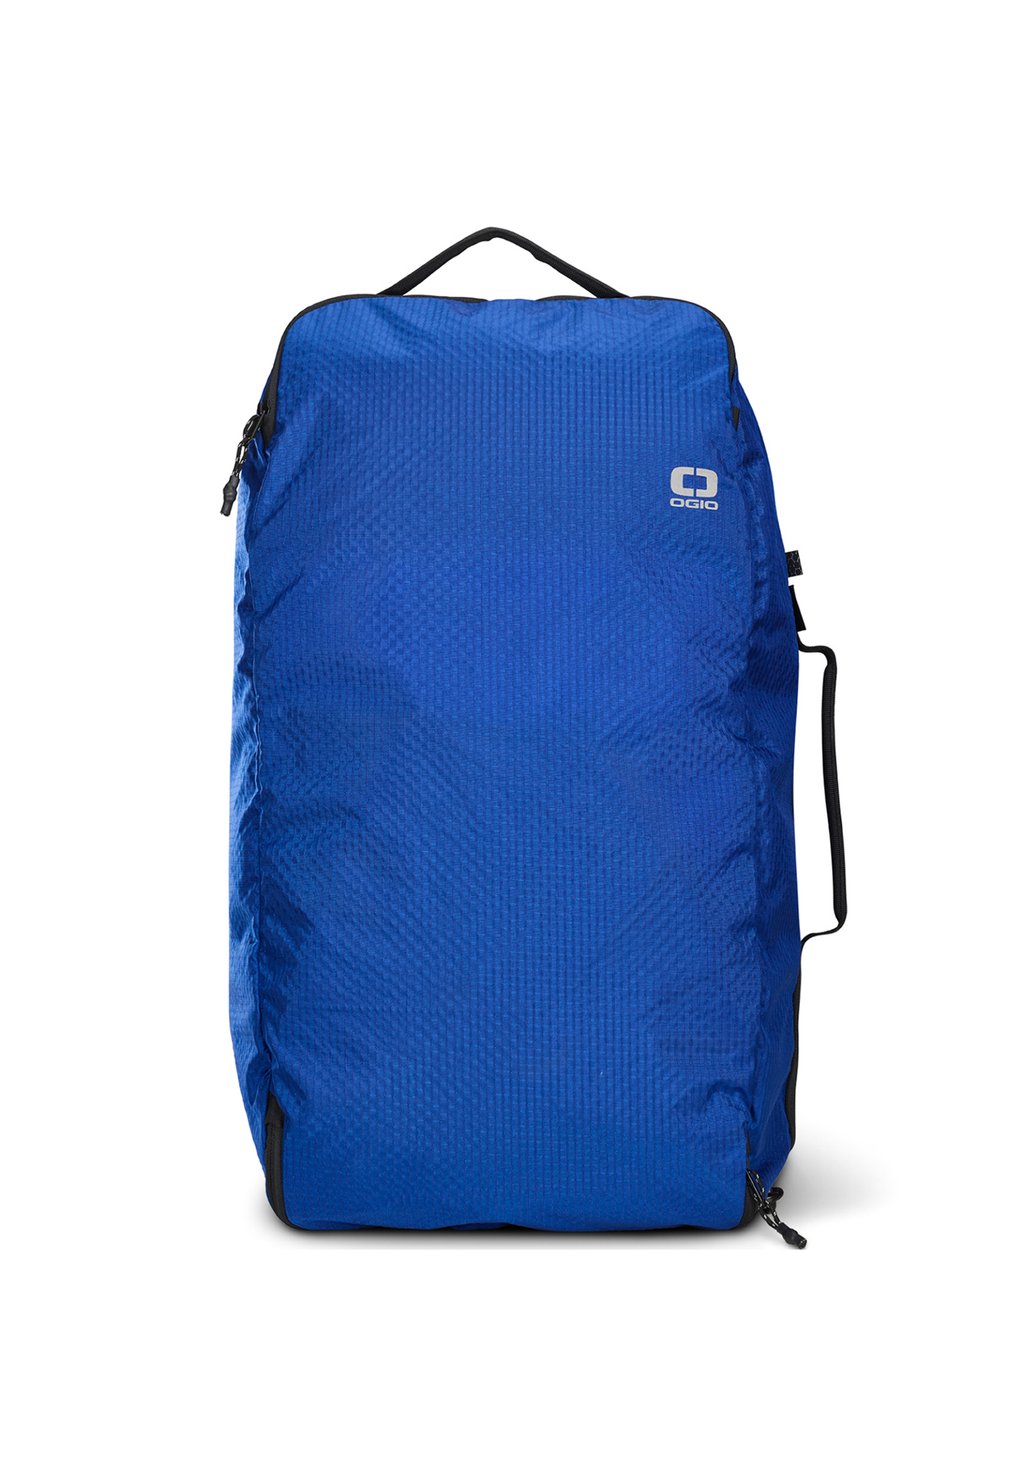 Дорожная сумка FUSE Ogio, цвет cobalt